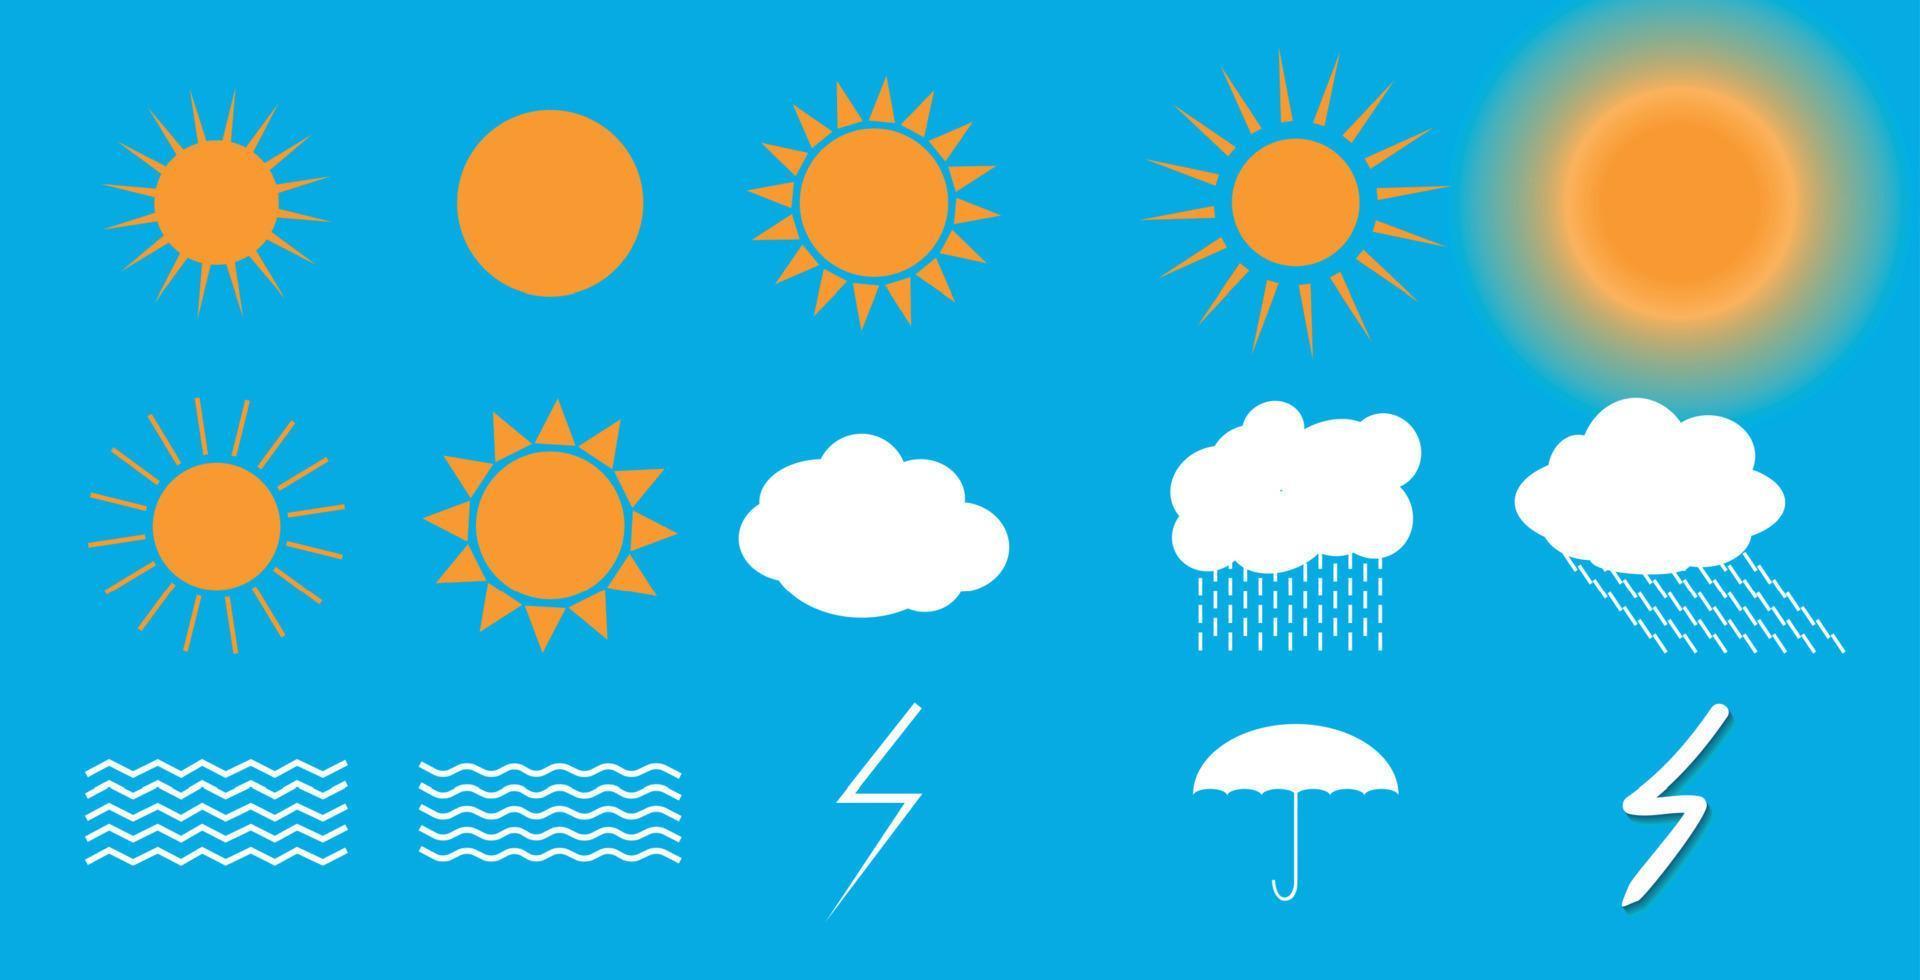 set symbolen zon, wolken, onweer, paraplu. vectorillustratie. vector